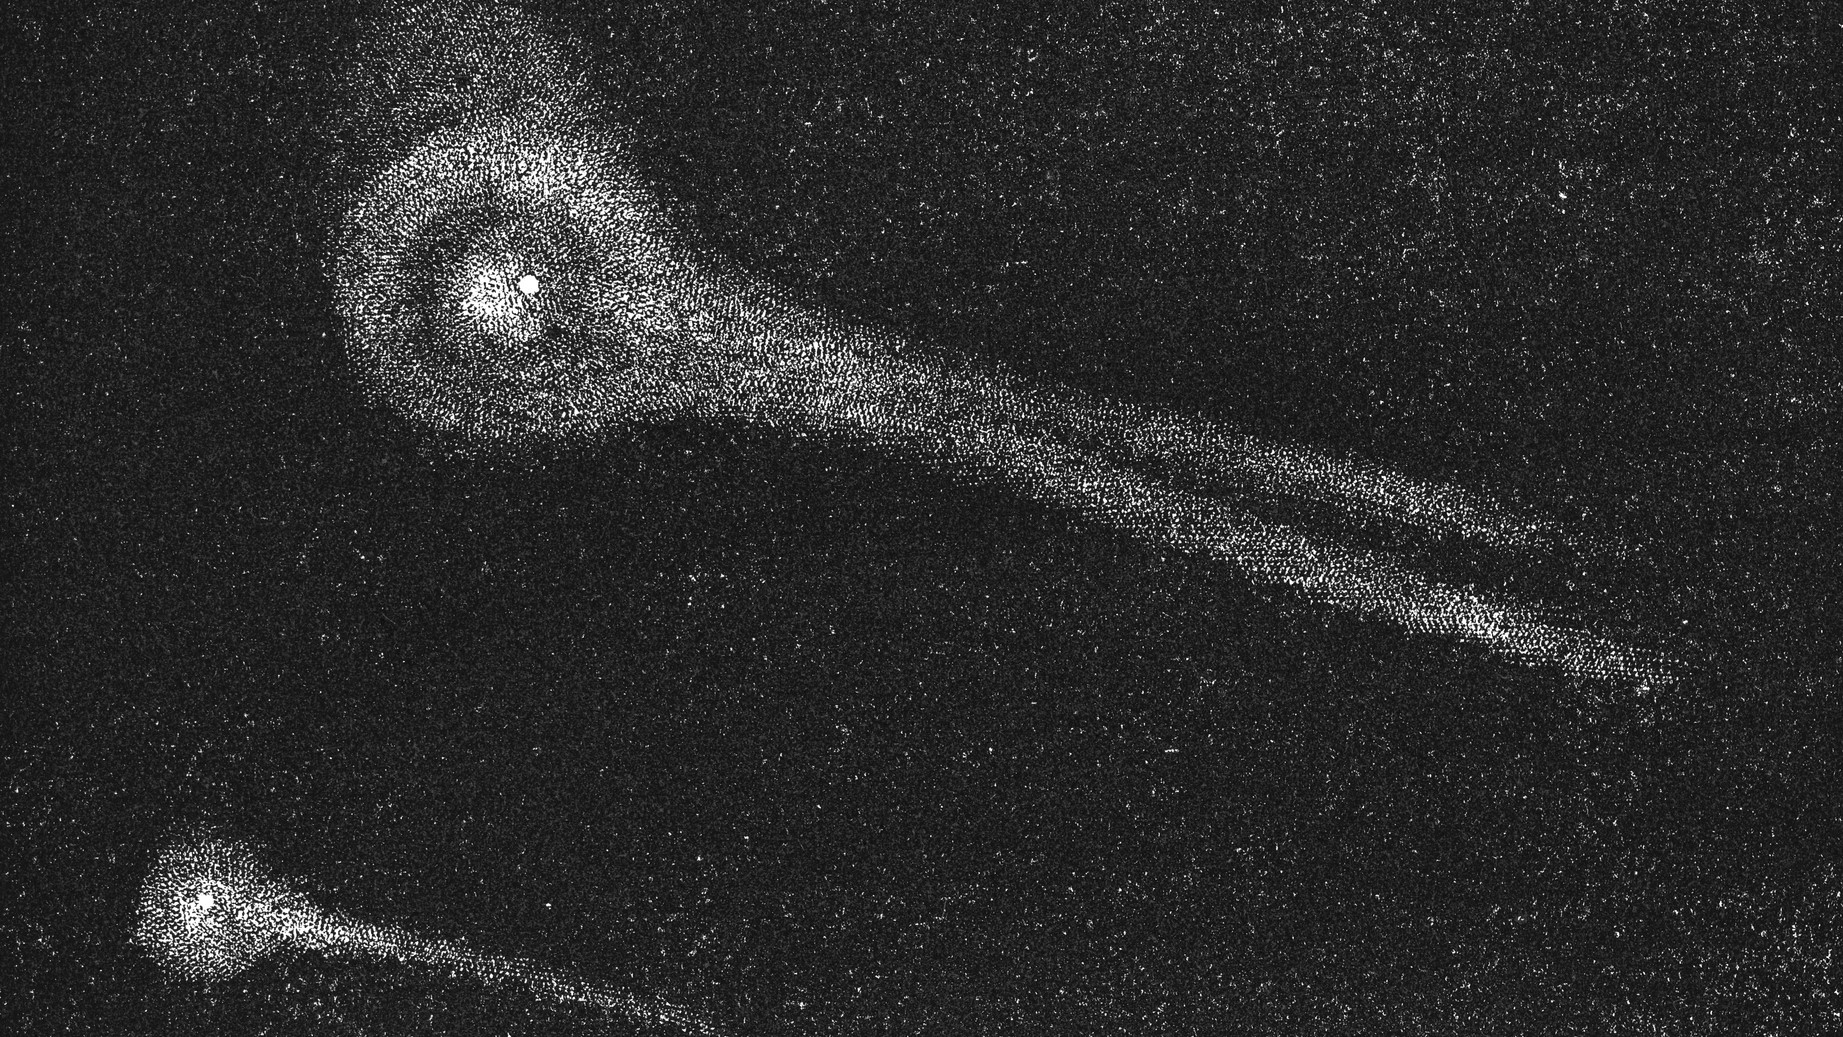 Eine gravierte Darstellung des Kometen Biella.